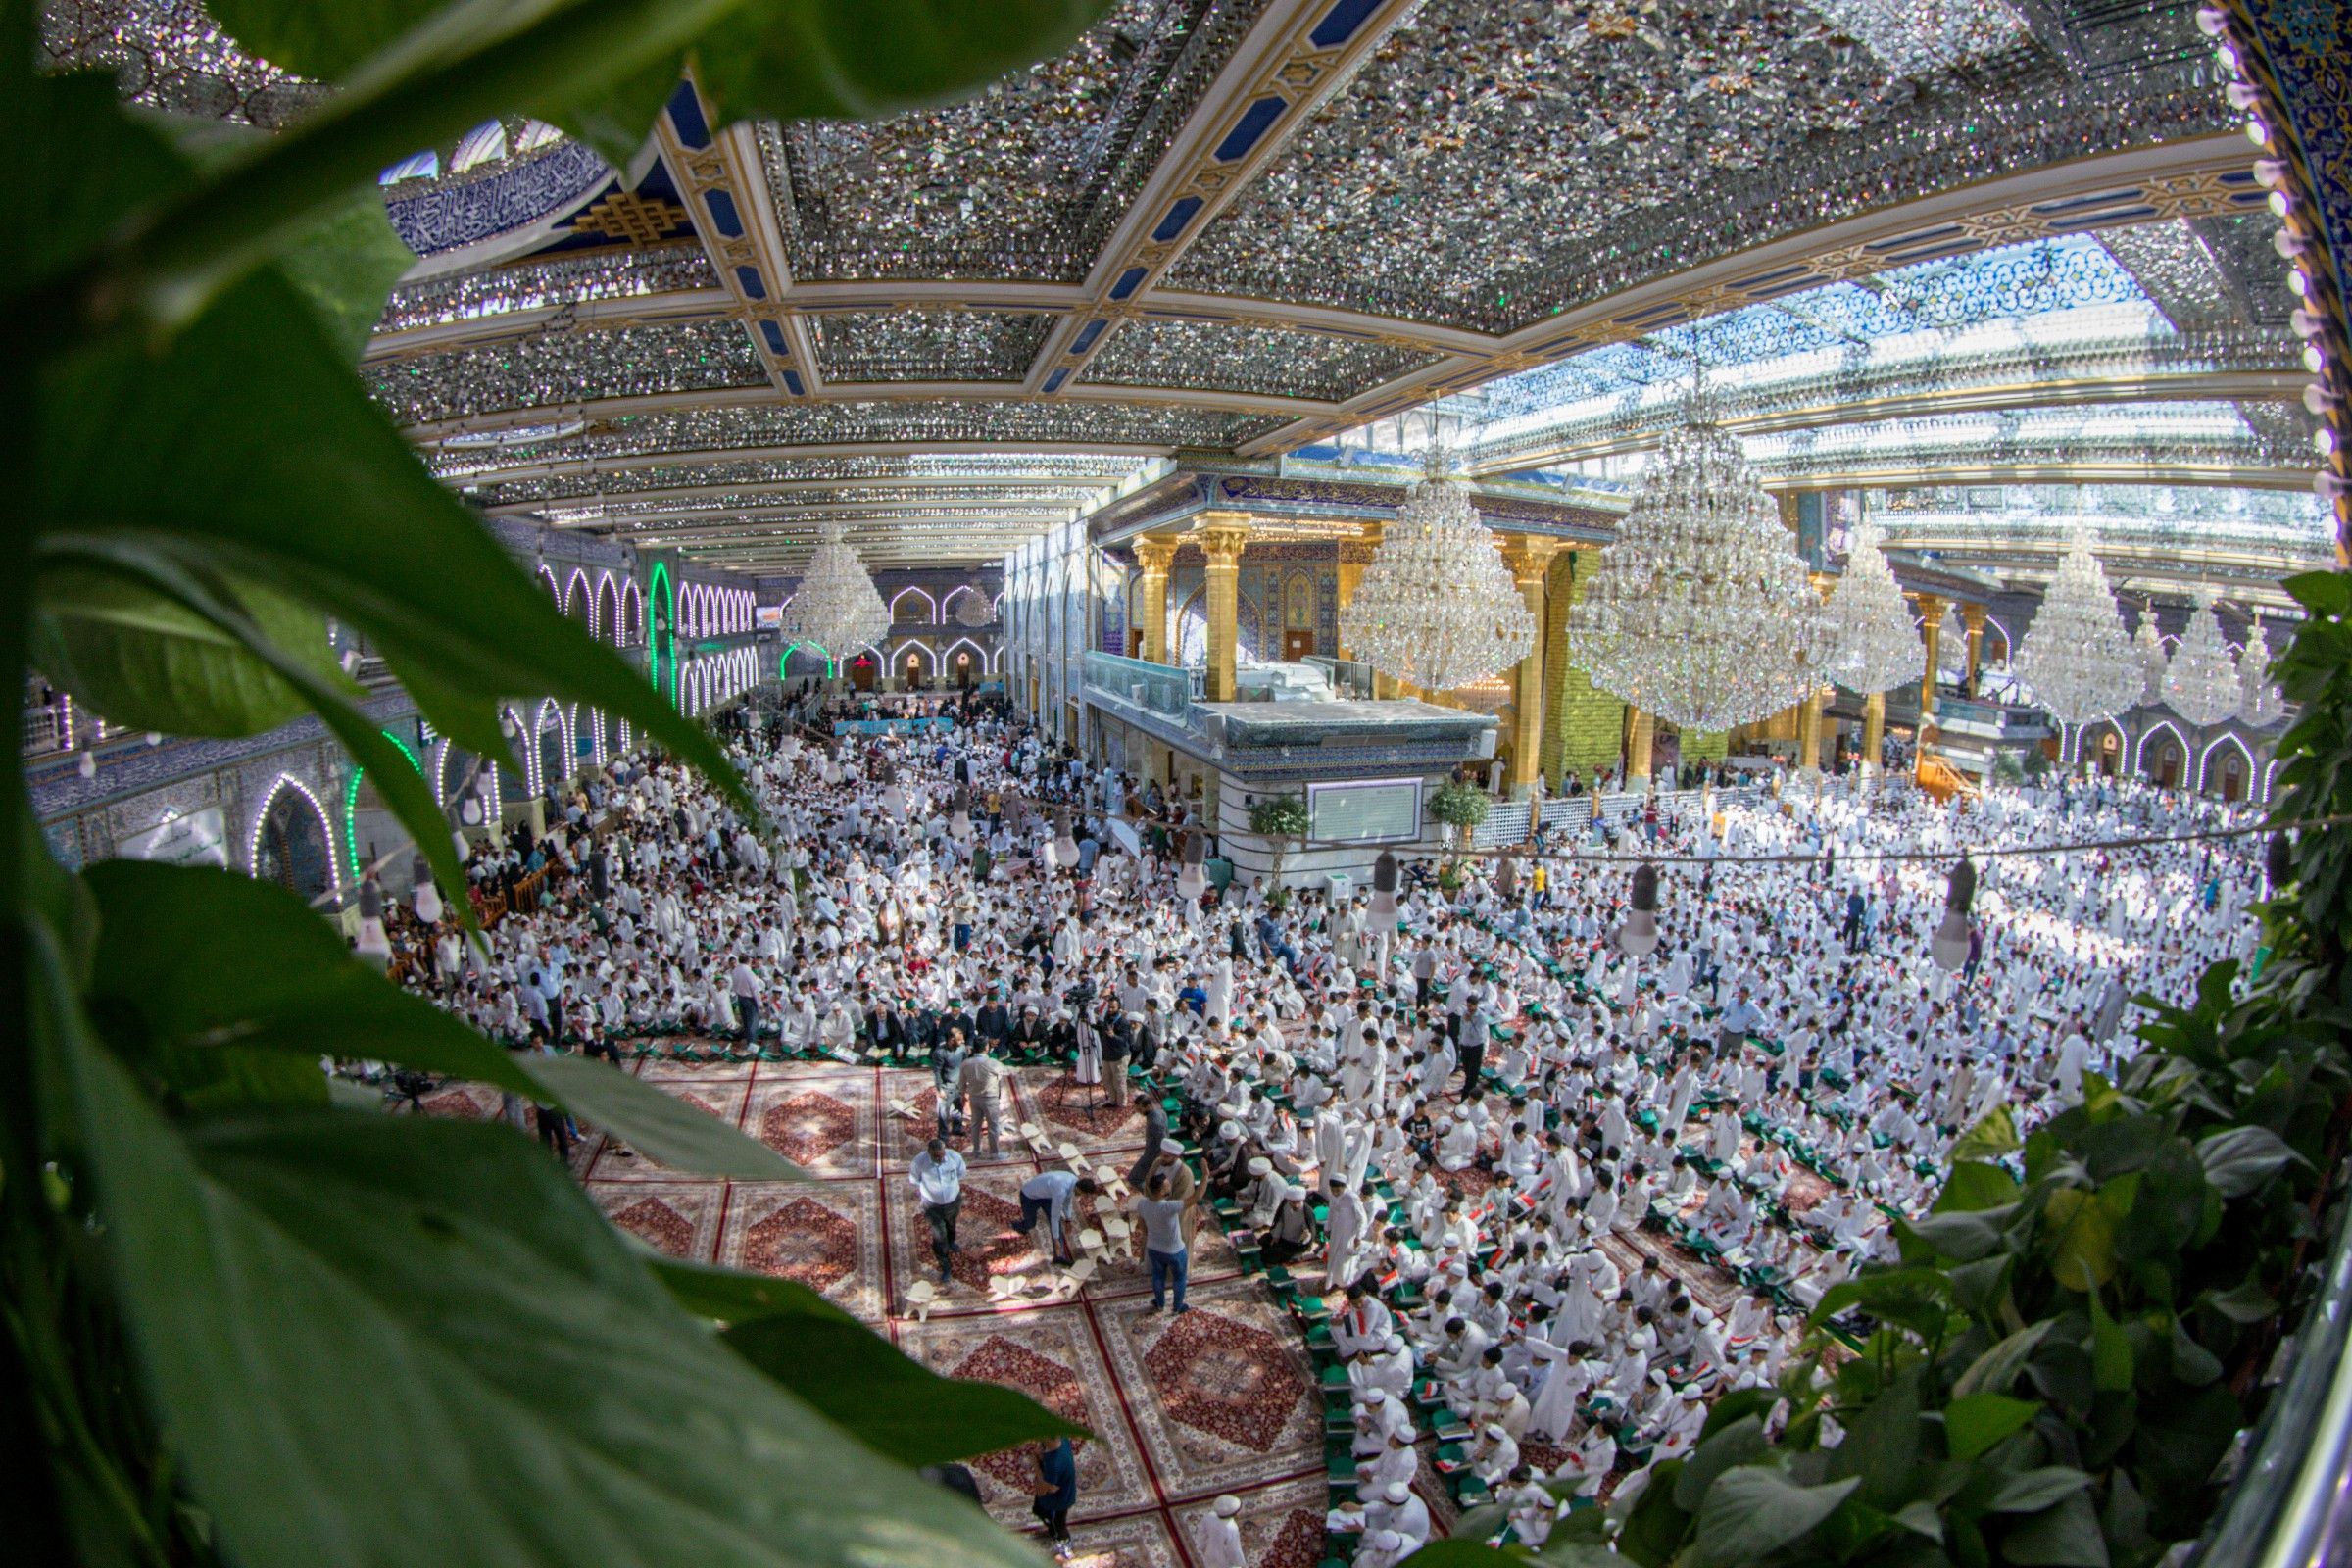 العتبة العباسية المقدسة تحتفي بتخرج أكثر من 22,000 طالب من مشروع الدورات القرآنية الصيفية